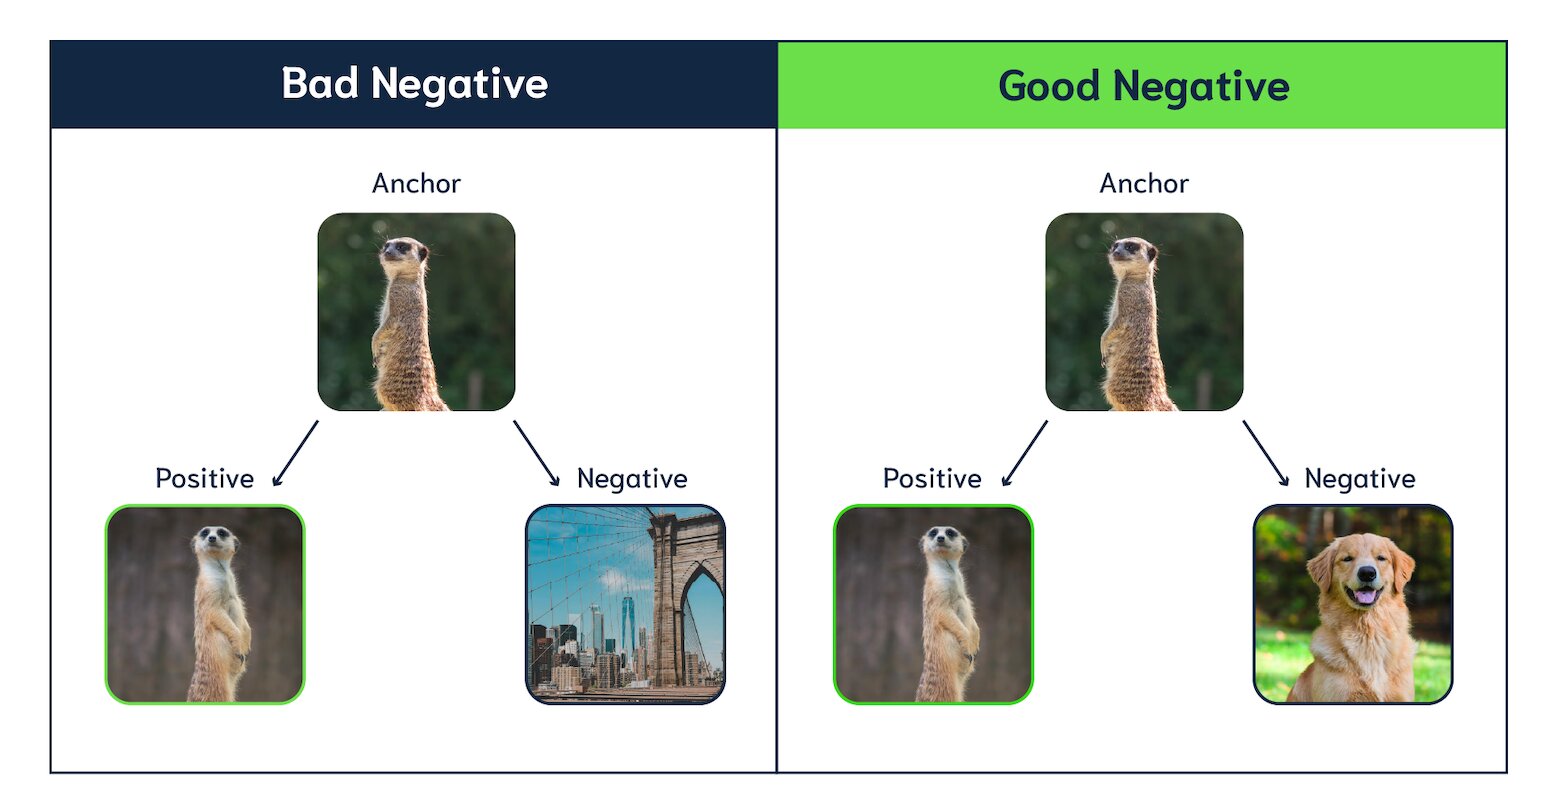 Bad Negative vs Good Negative